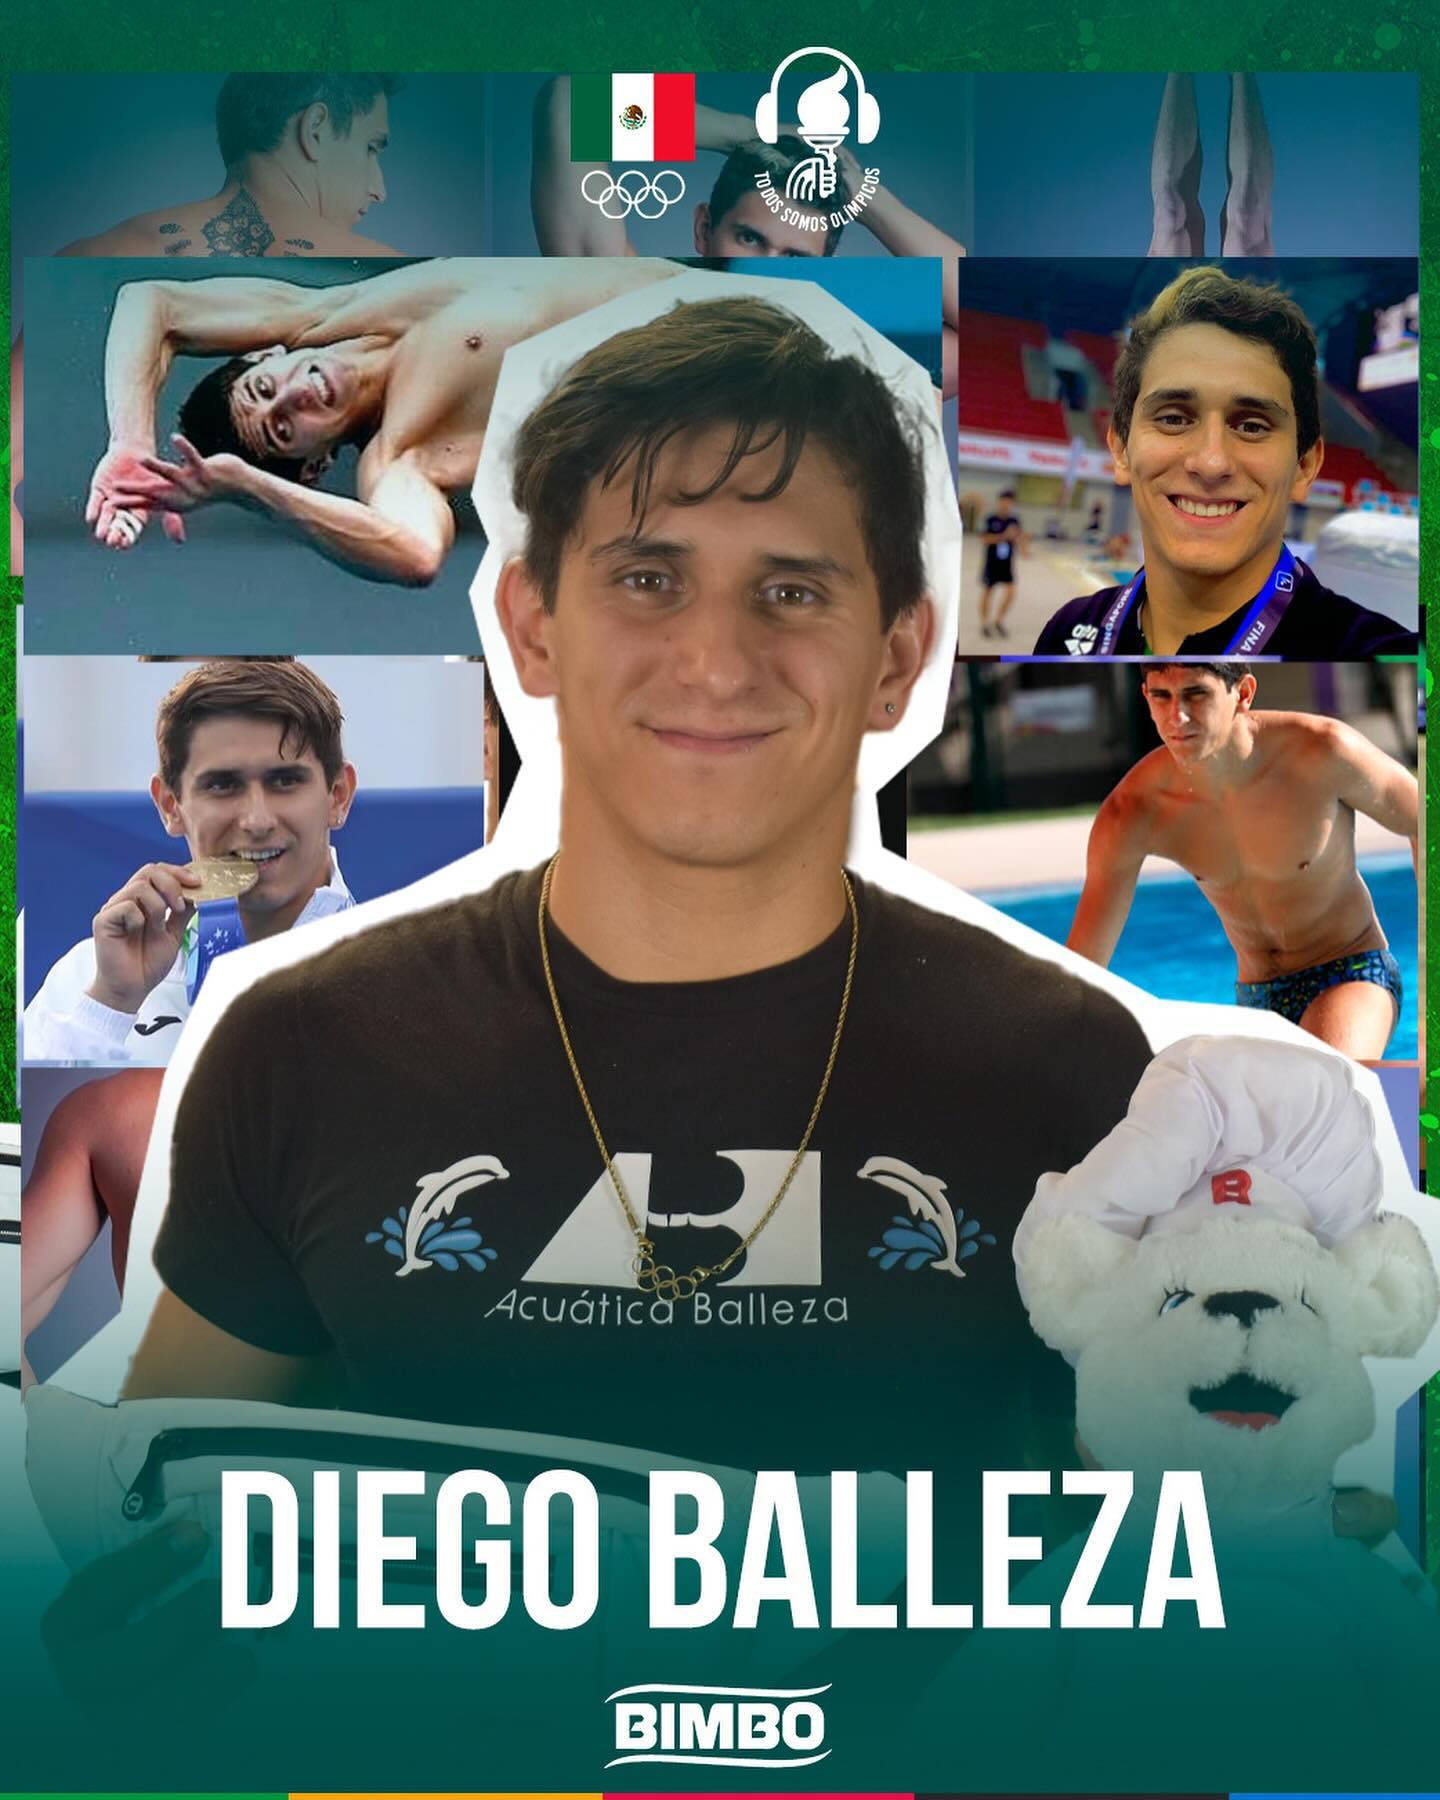 ¡Ya está disponible nuestro nuevo episodio de ‘Todos Somos Olímpicos’ con Diego Balleza! 🎉 Descubre la increíble historia detrás de este talentoso clavadista y emprendedor. Escucha ahora en YouTube.